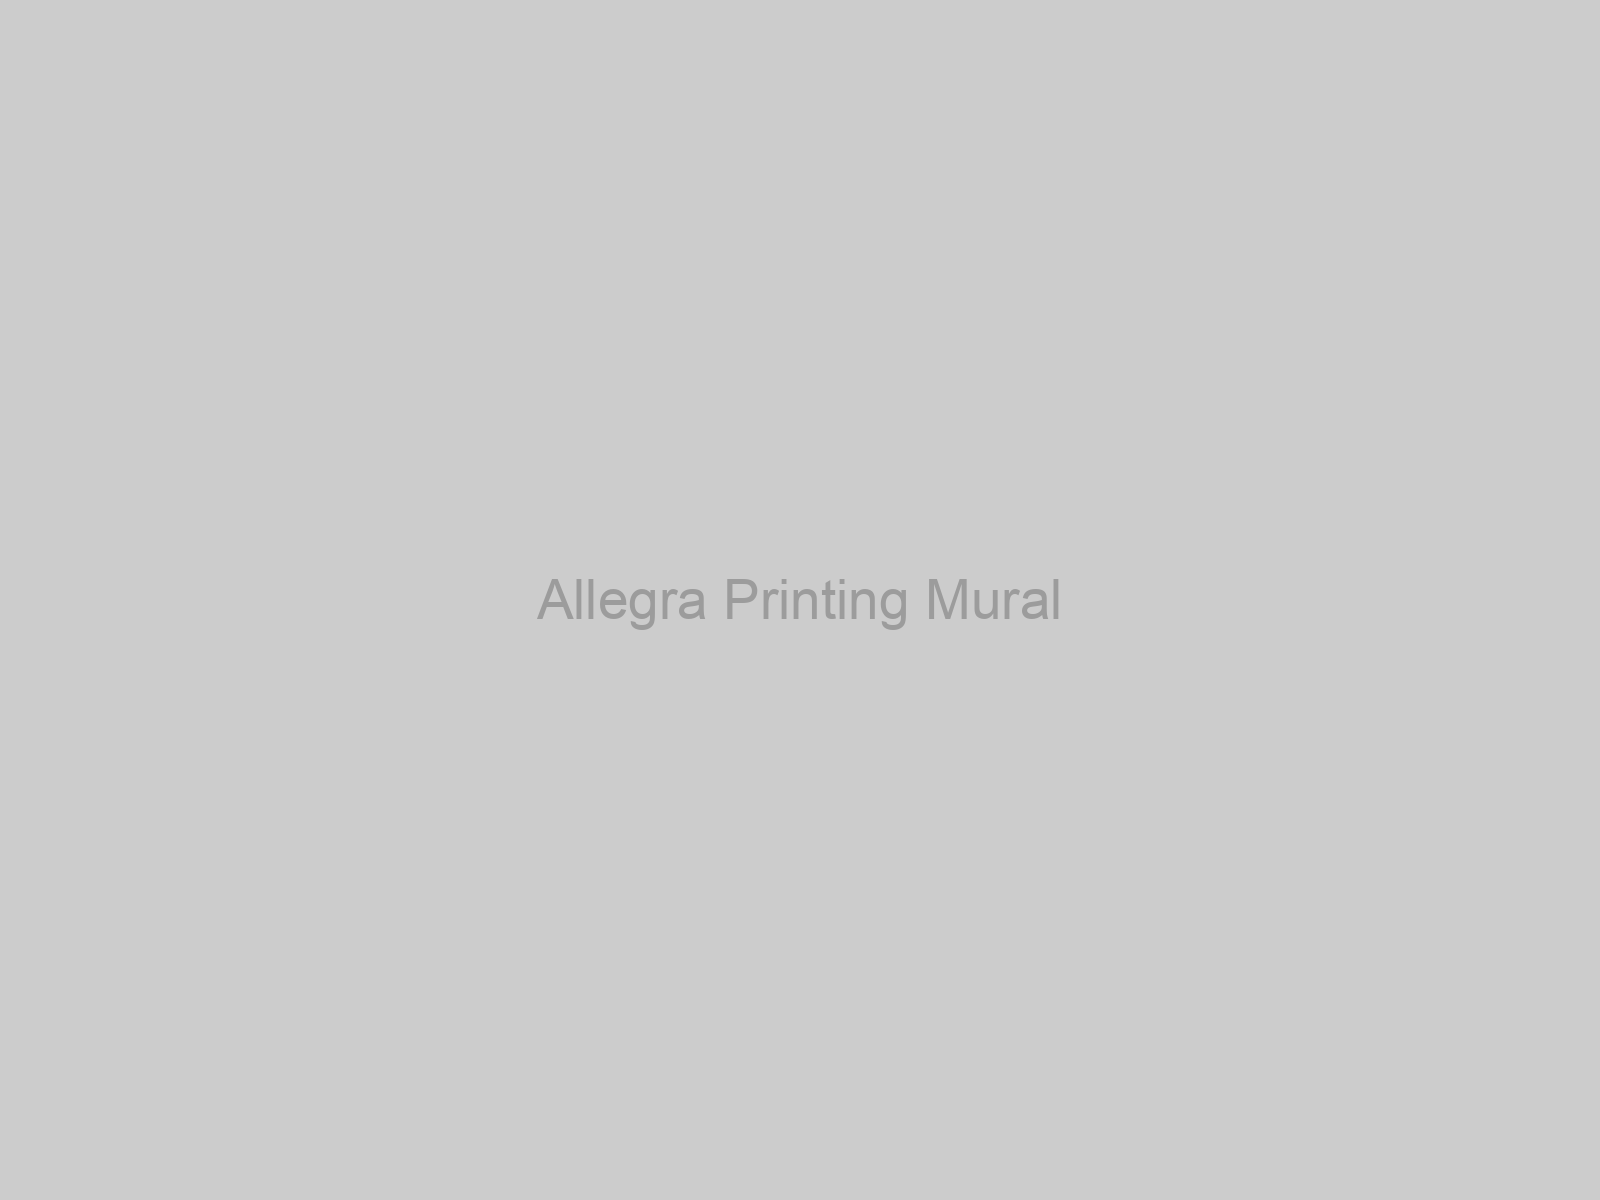 Allegra Printing Mural